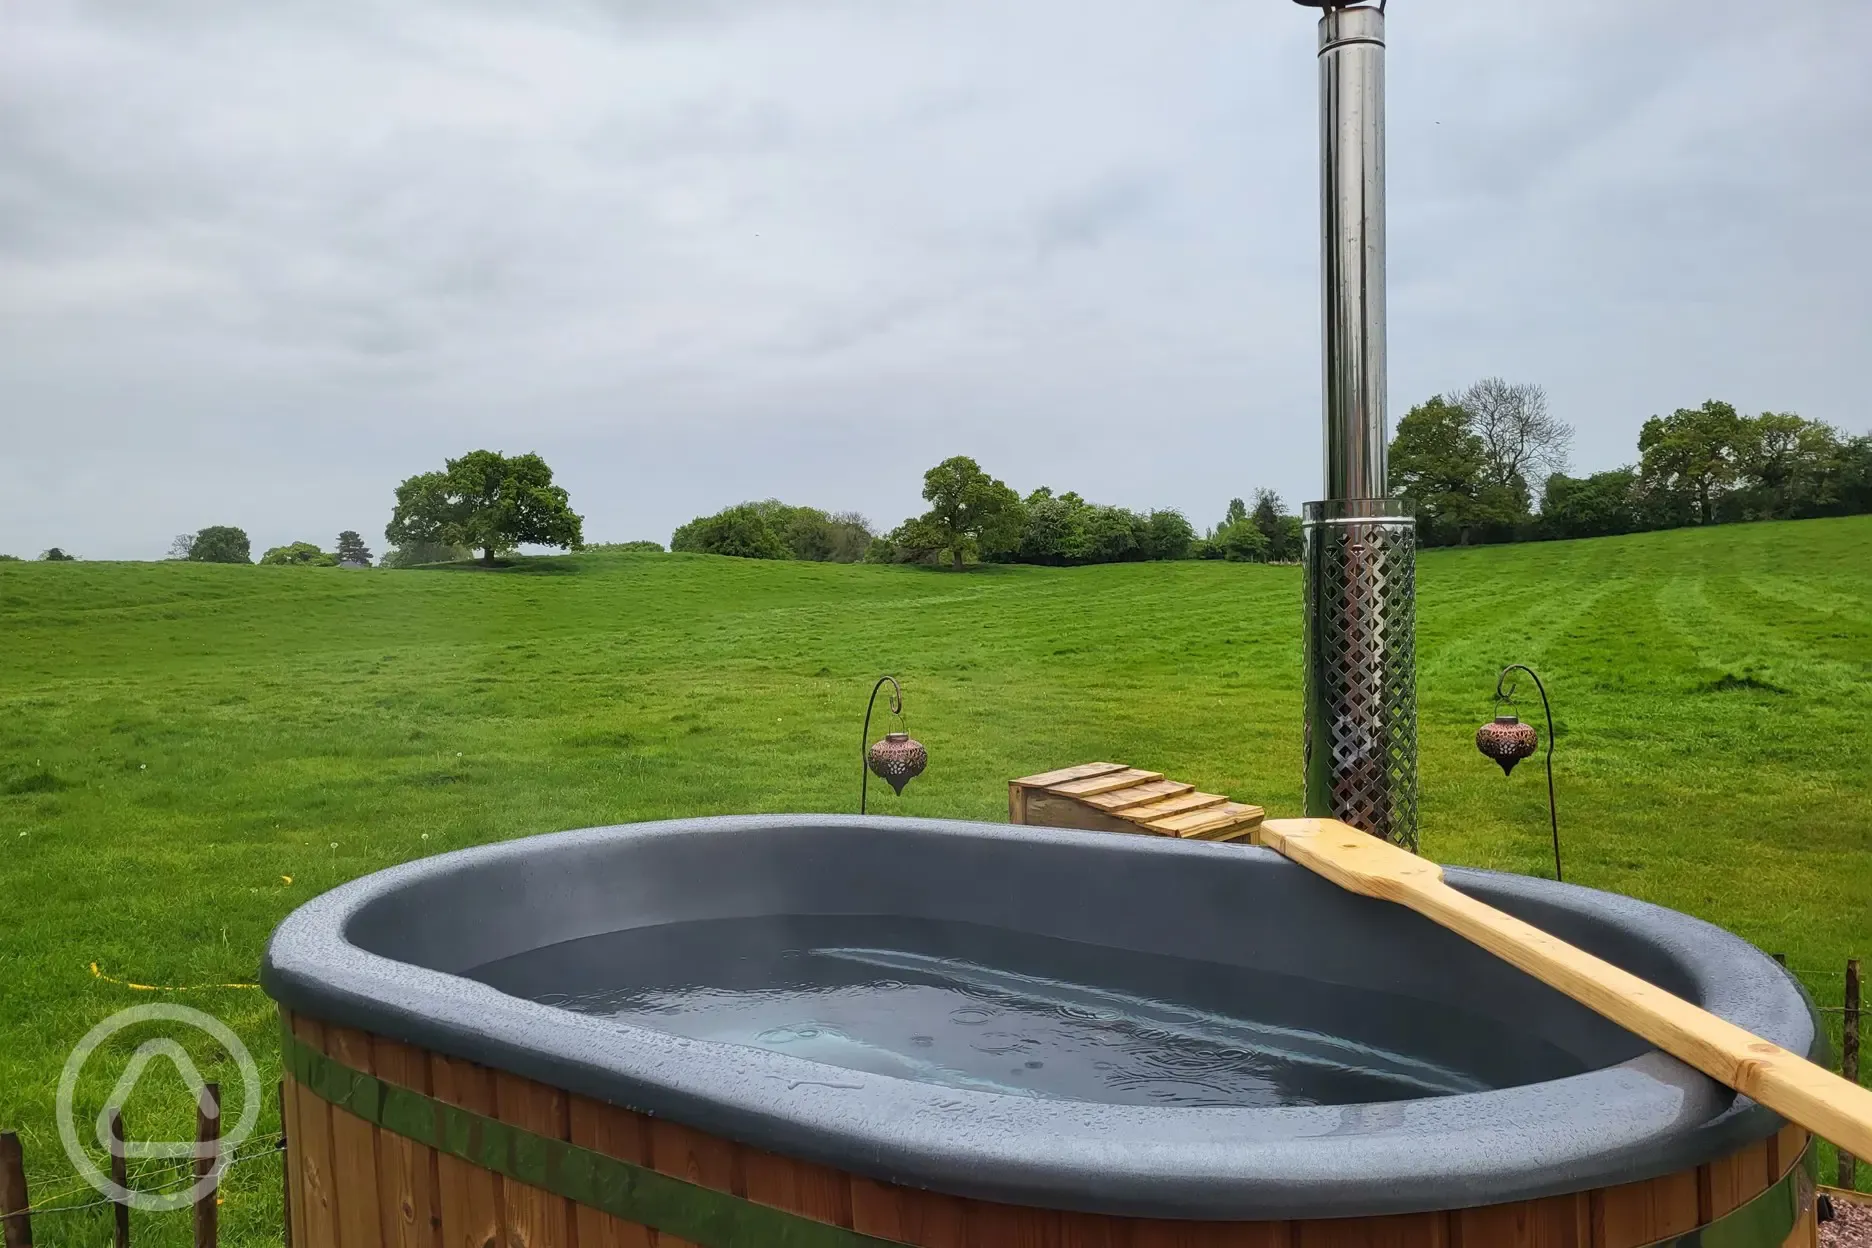 Hereford hot tub